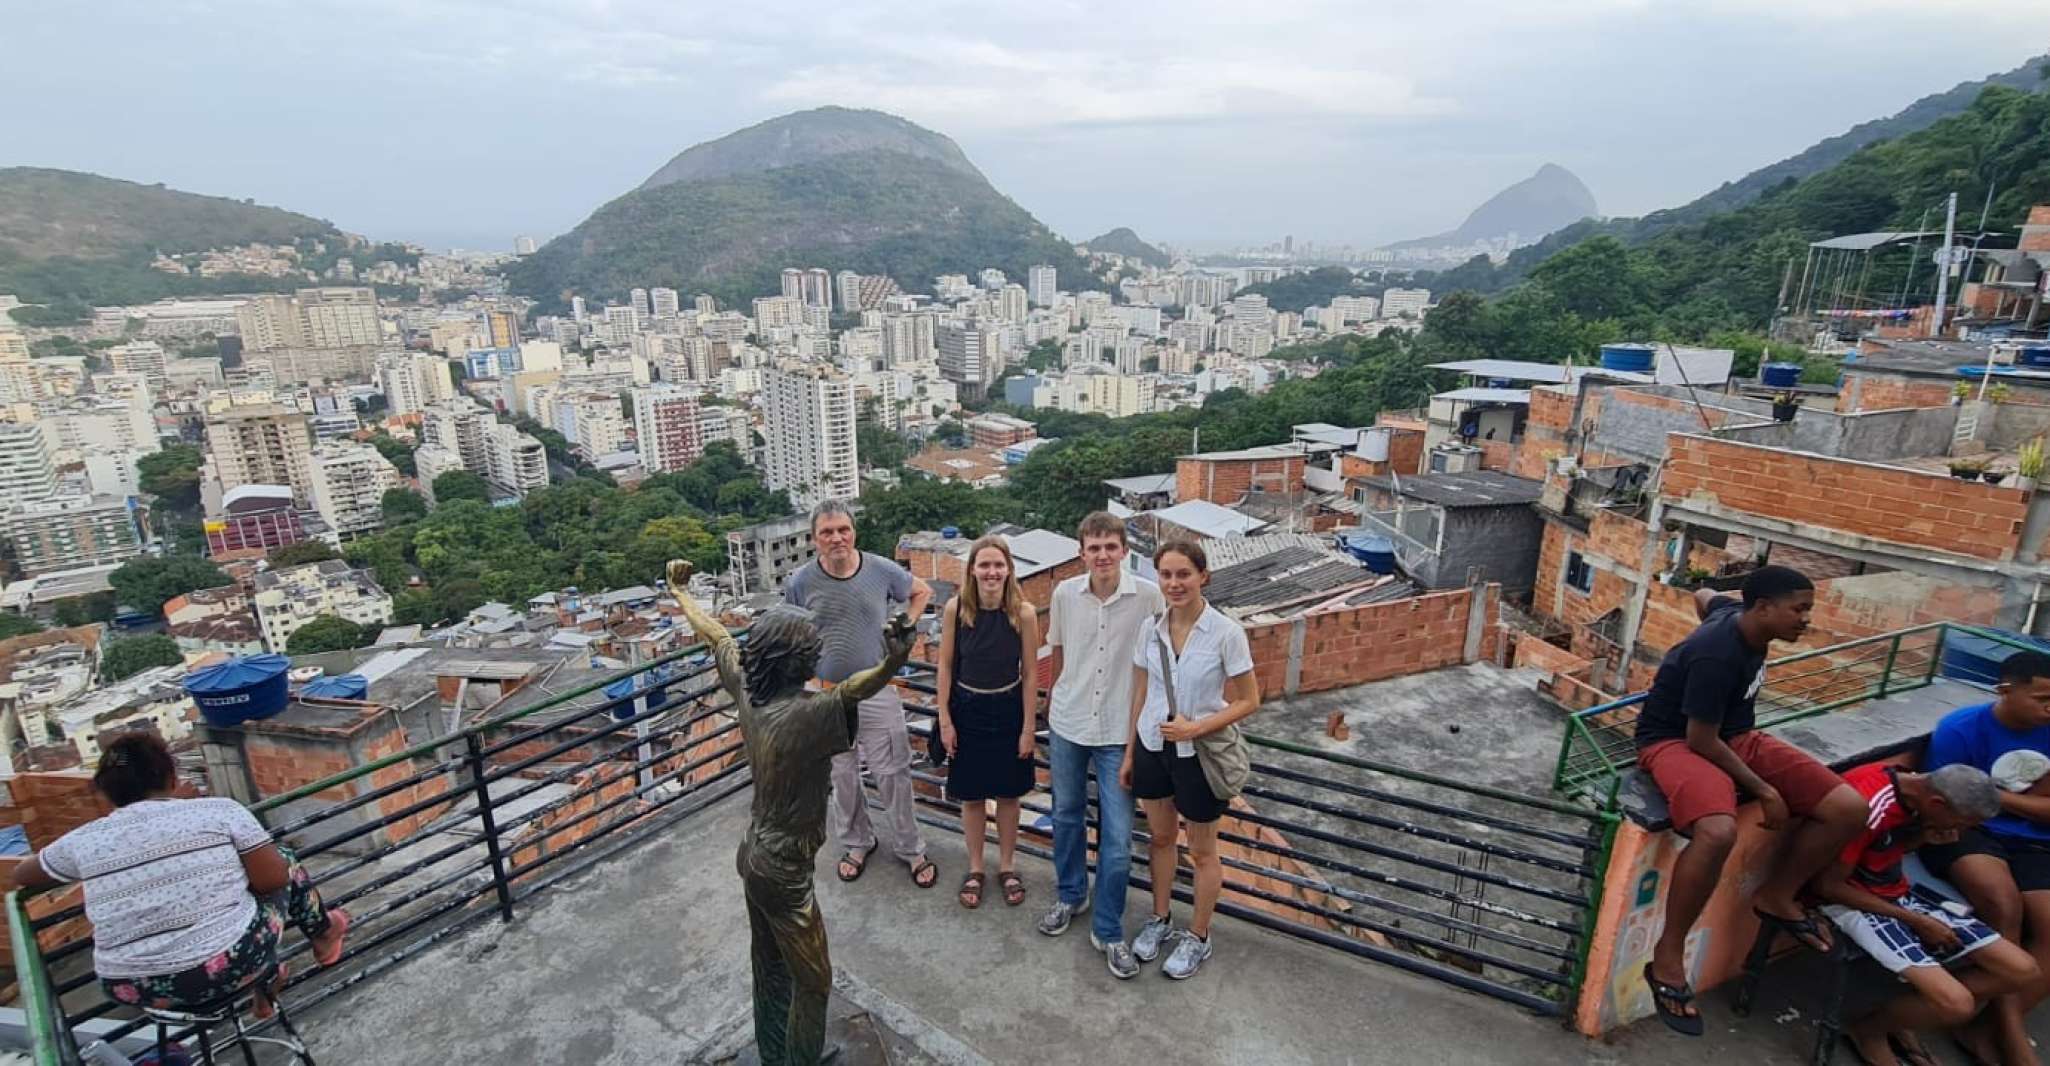 Rio de Janeiro, Santa Marta favela excursion with a local - Housity